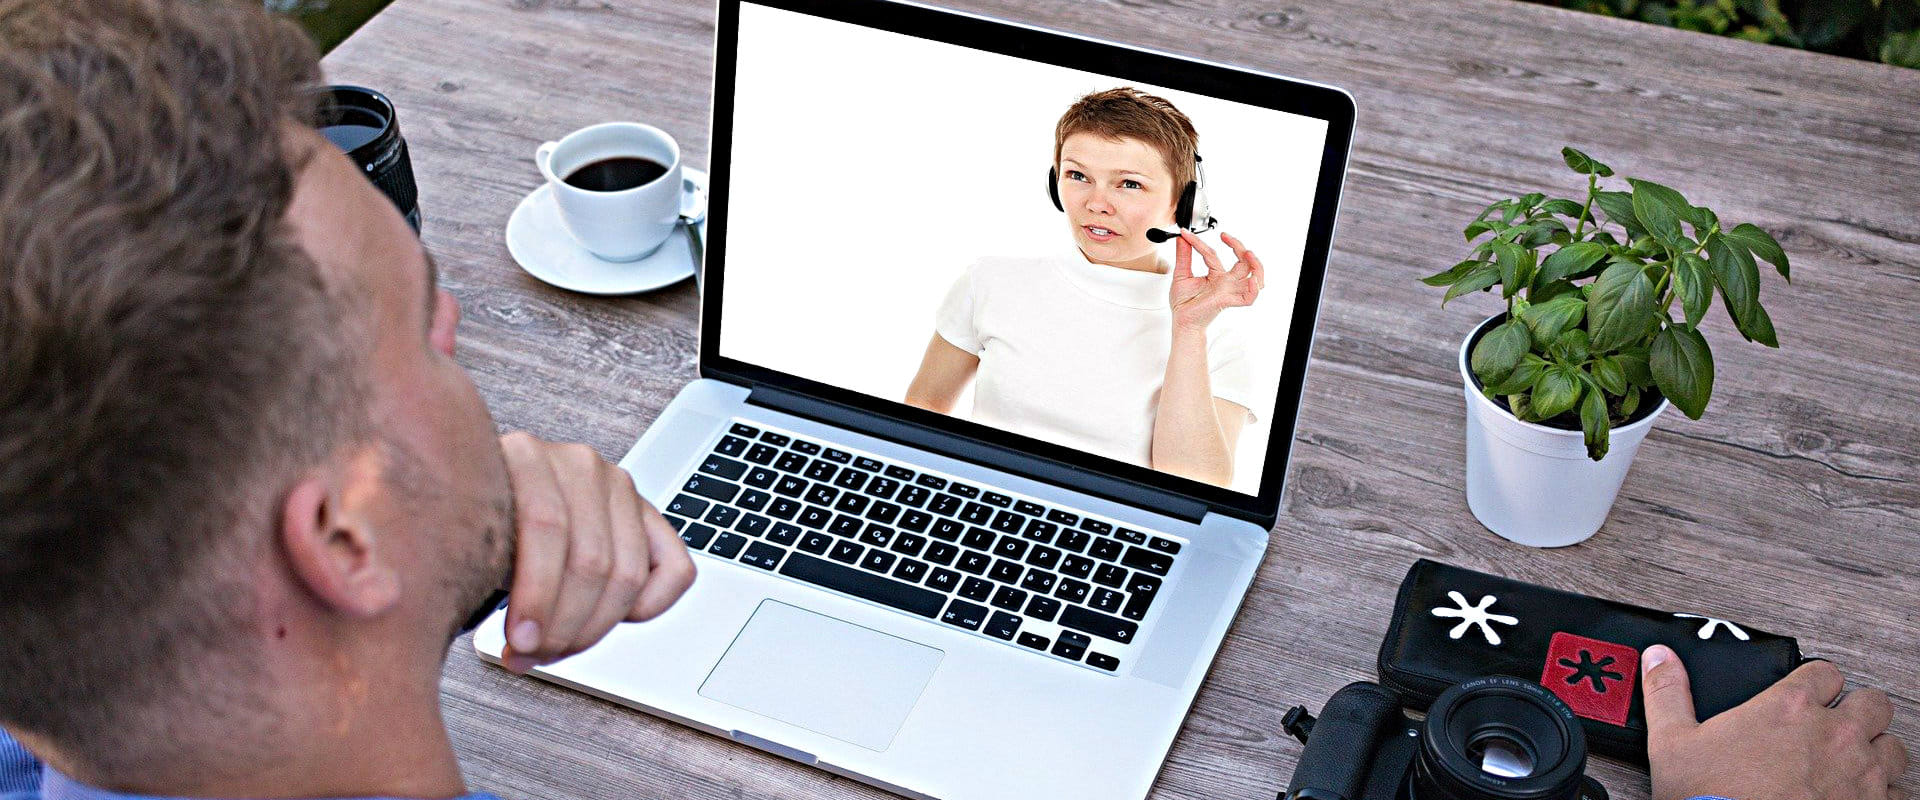 Live-Video-Beratung: Persönliche Beratung für Online-Kunden - Ihr Fenster zum Point of Sale